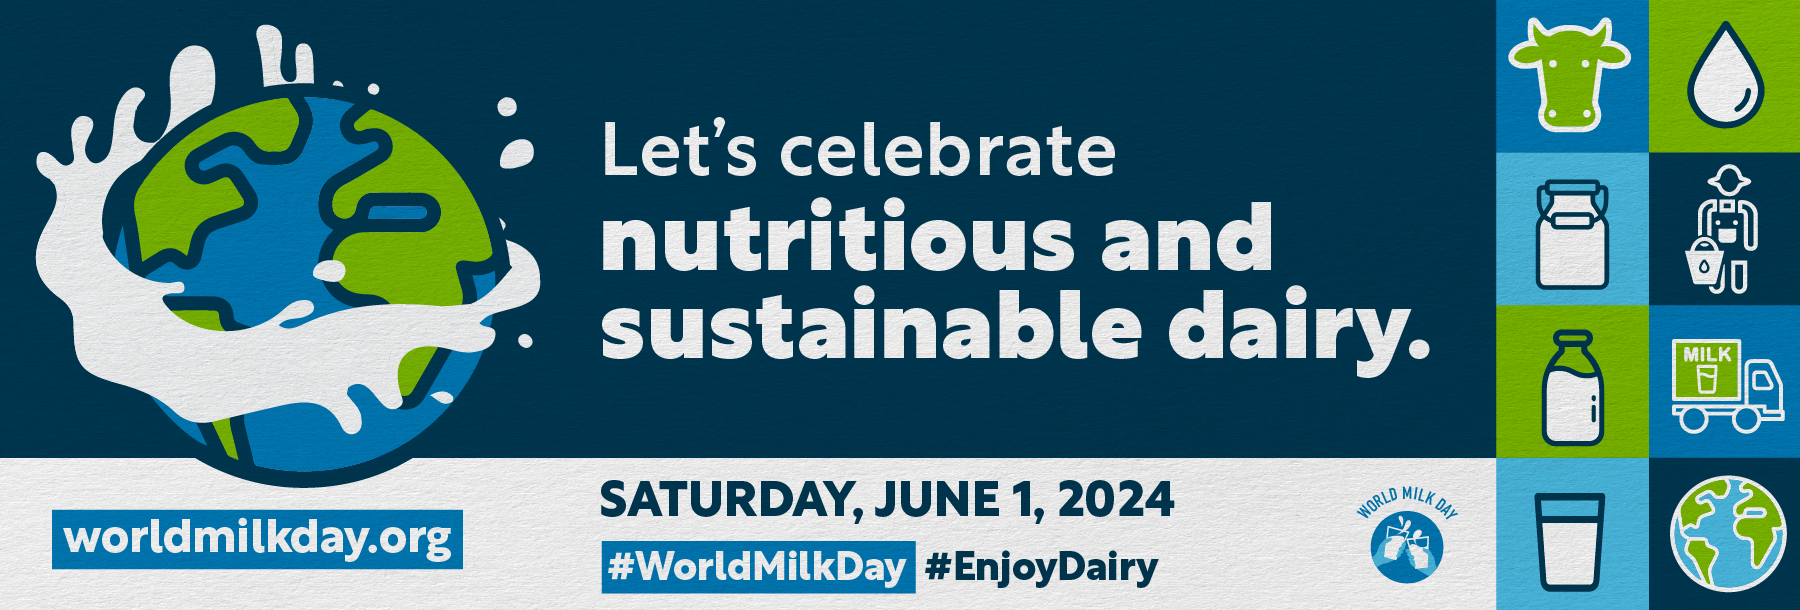 World Milk Day 2024 E-Signature